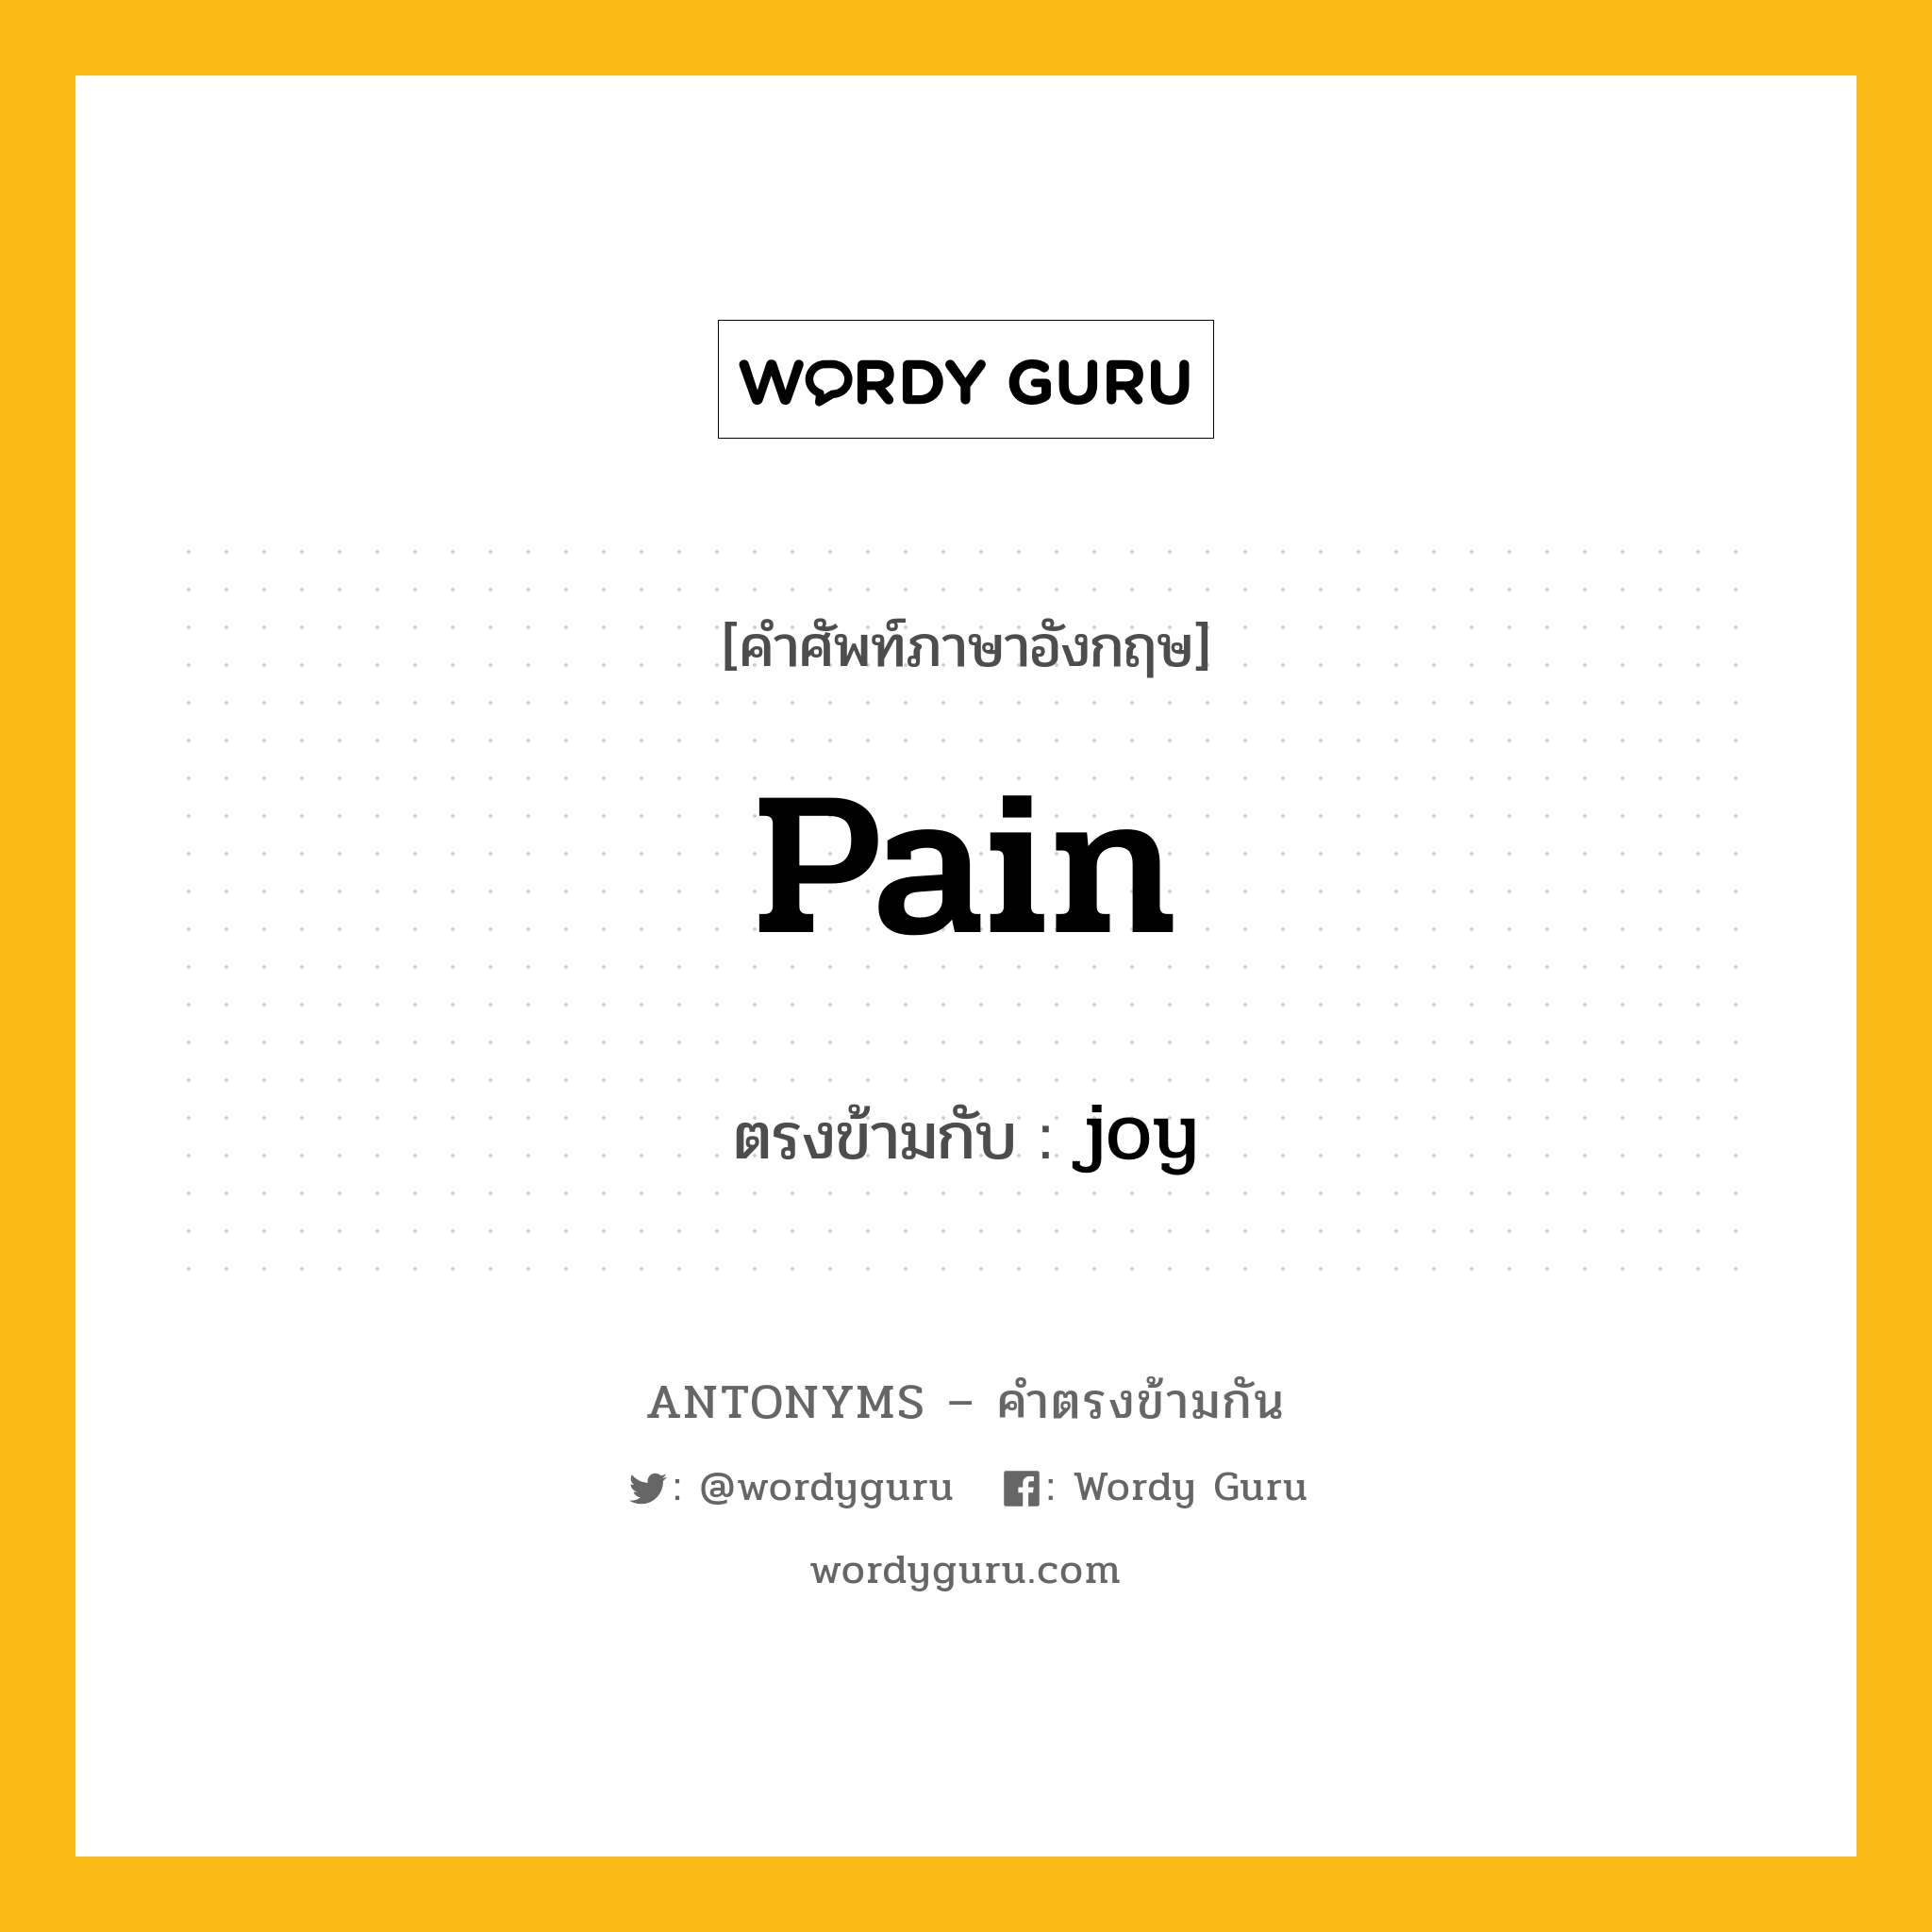 pain เป็นคำตรงข้ามกับคำไหนบ้าง?, คำศัพท์ภาษาอังกฤษ pain ตรงข้ามกับ joy หมวด joy